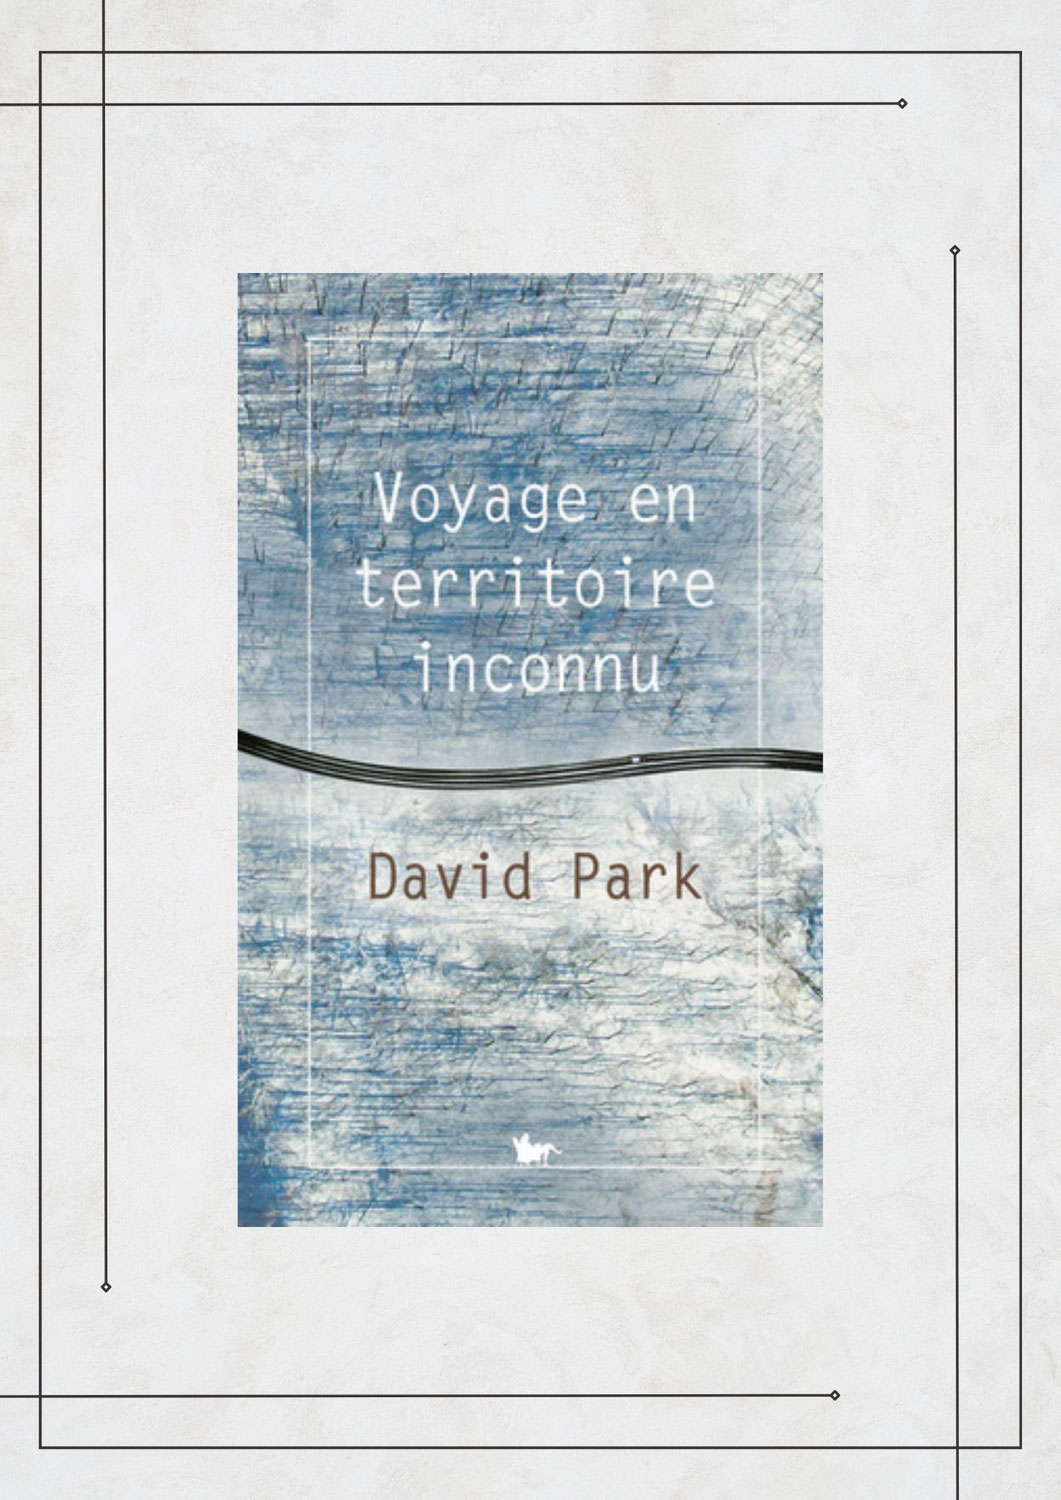 Voyage en territoire inconnu, David Park, La Table Ronde